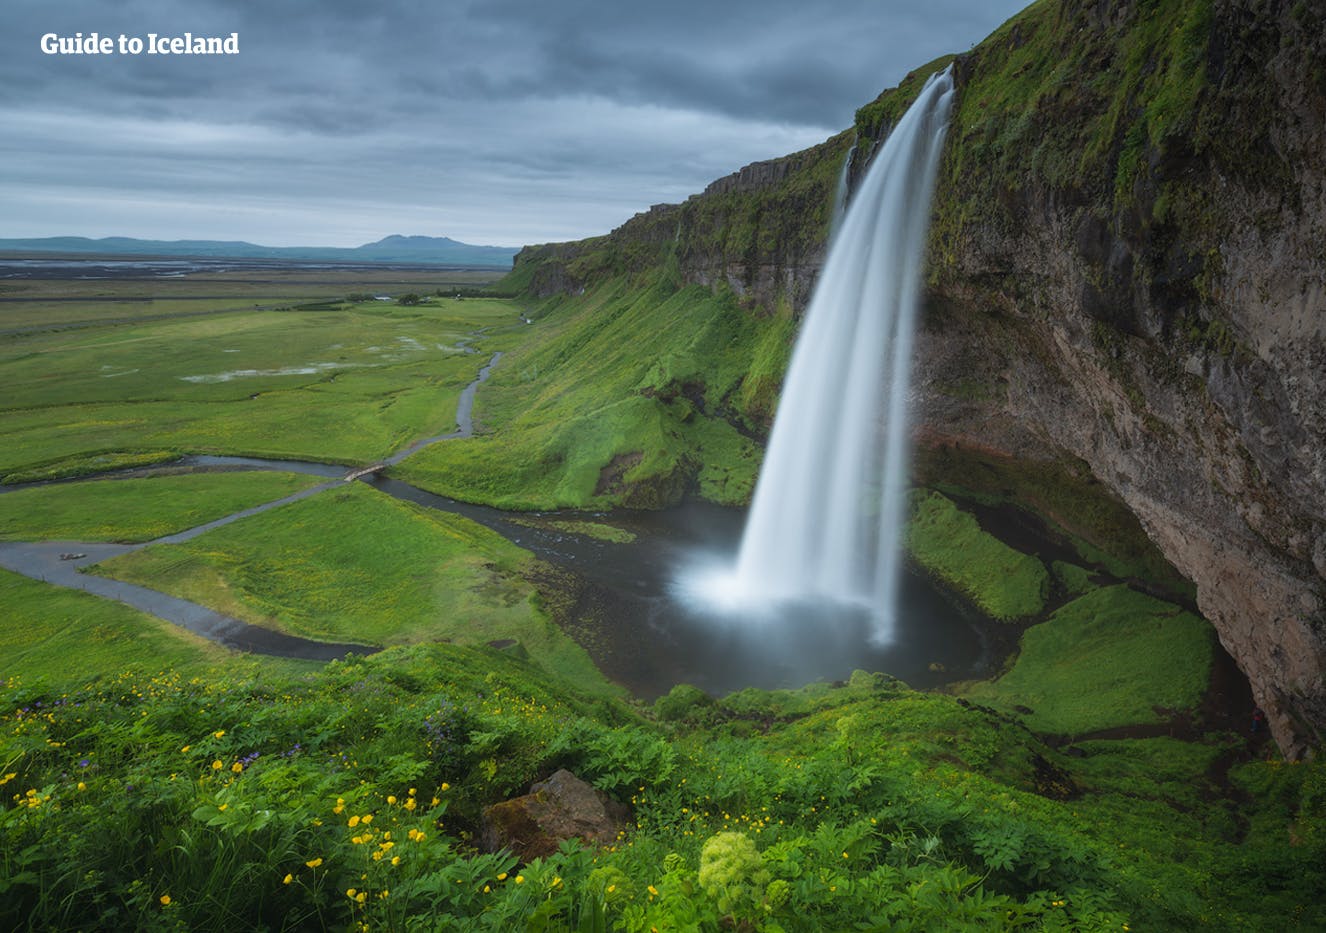 Południowe wybrzeże Islandii pokryte jest licznymi pięknymi wodospadami.